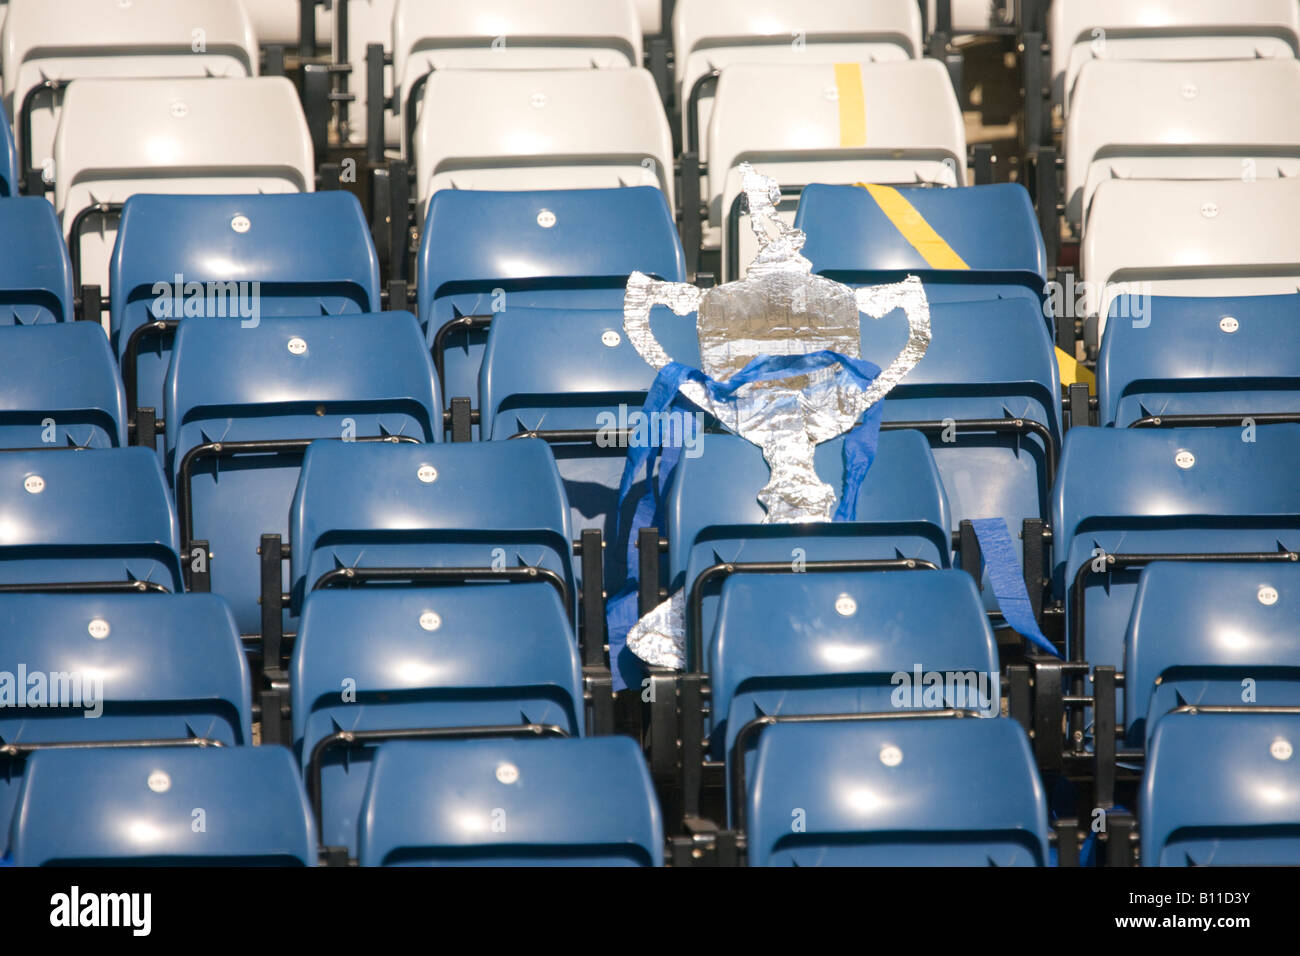 Perdu et oublié rêves brisés équipe perdante stade de football vide sièges à Hampden Park après Queens perdre la coupe écossais Banque D'Images